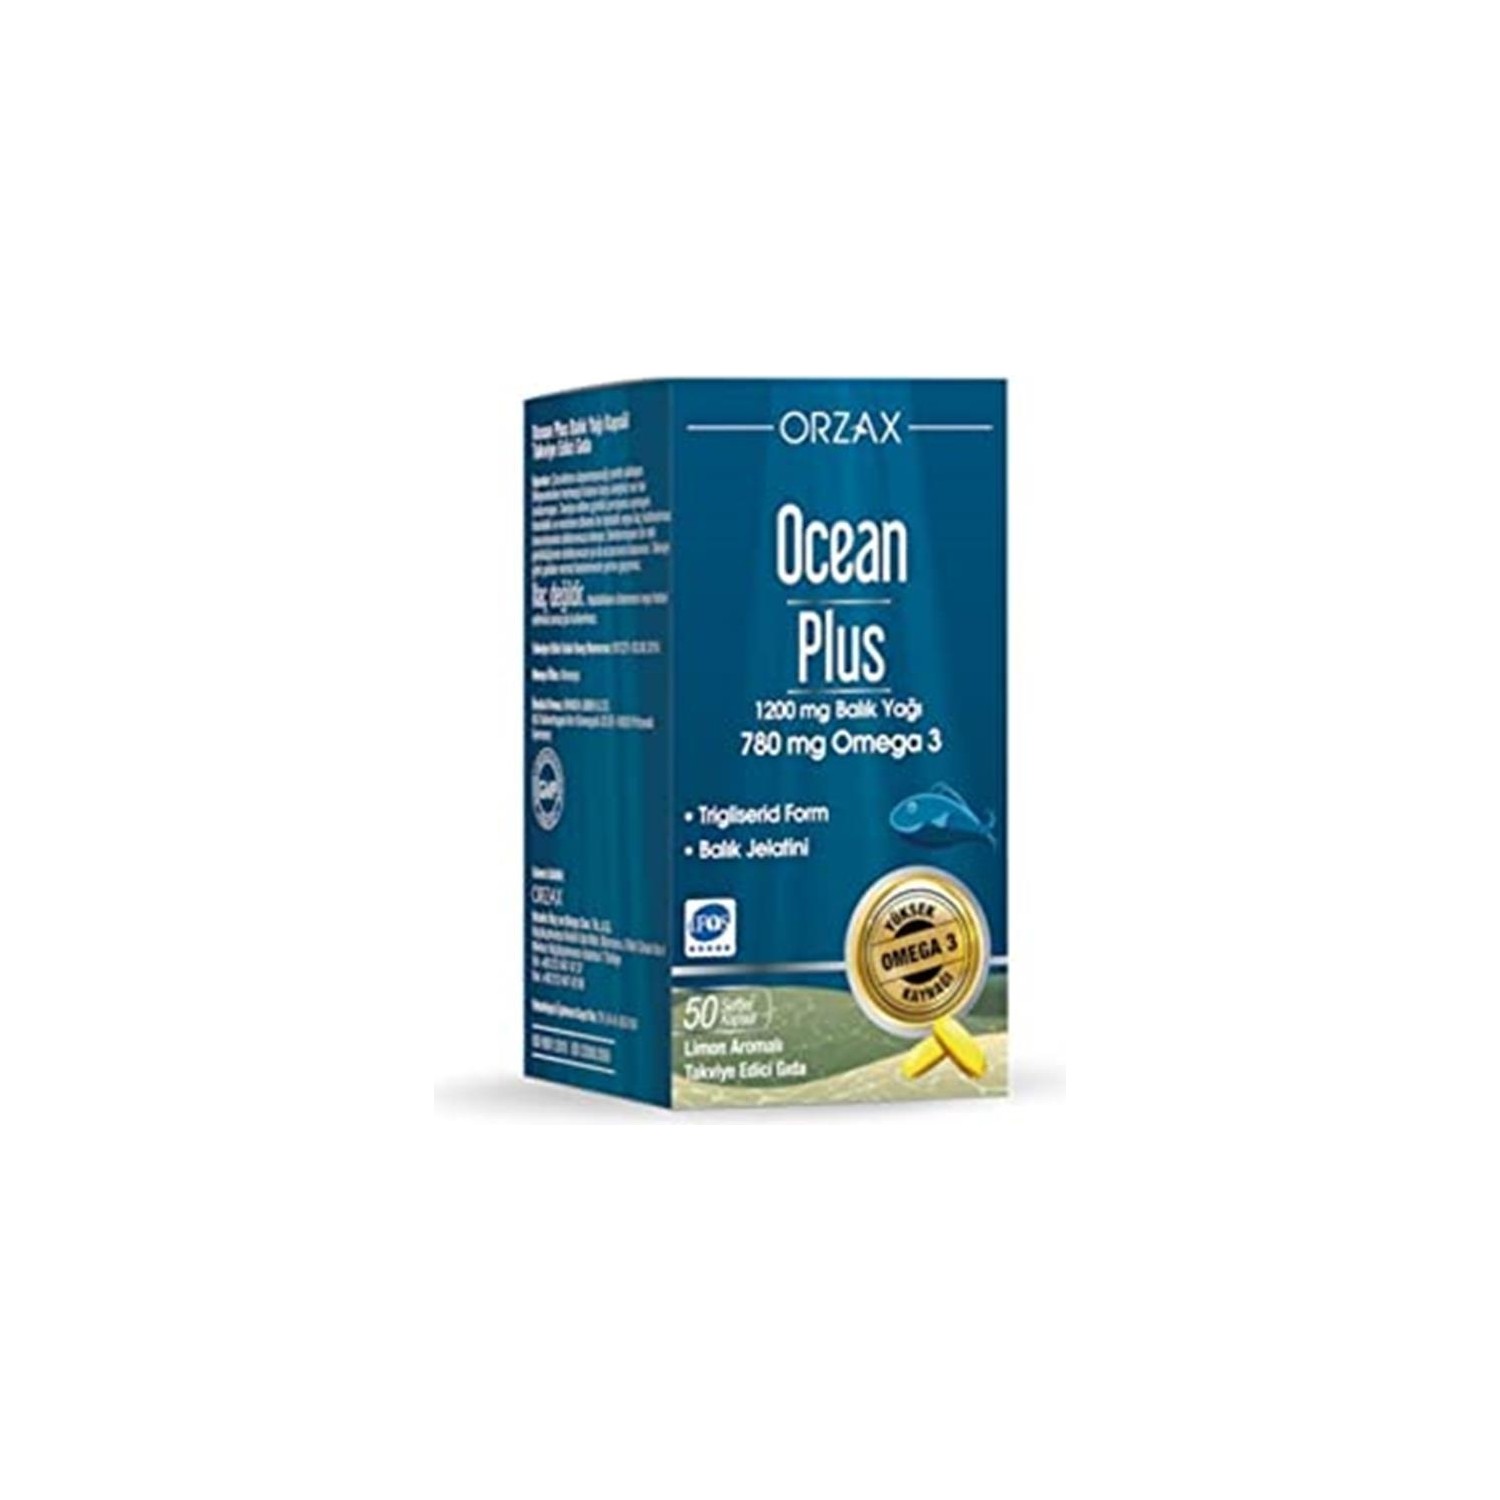 Омега-3 Ocean Plus 1200 мг, 50 капсул омега 3 ocean plus 1200 мг 50 капсул сироп ocean orange